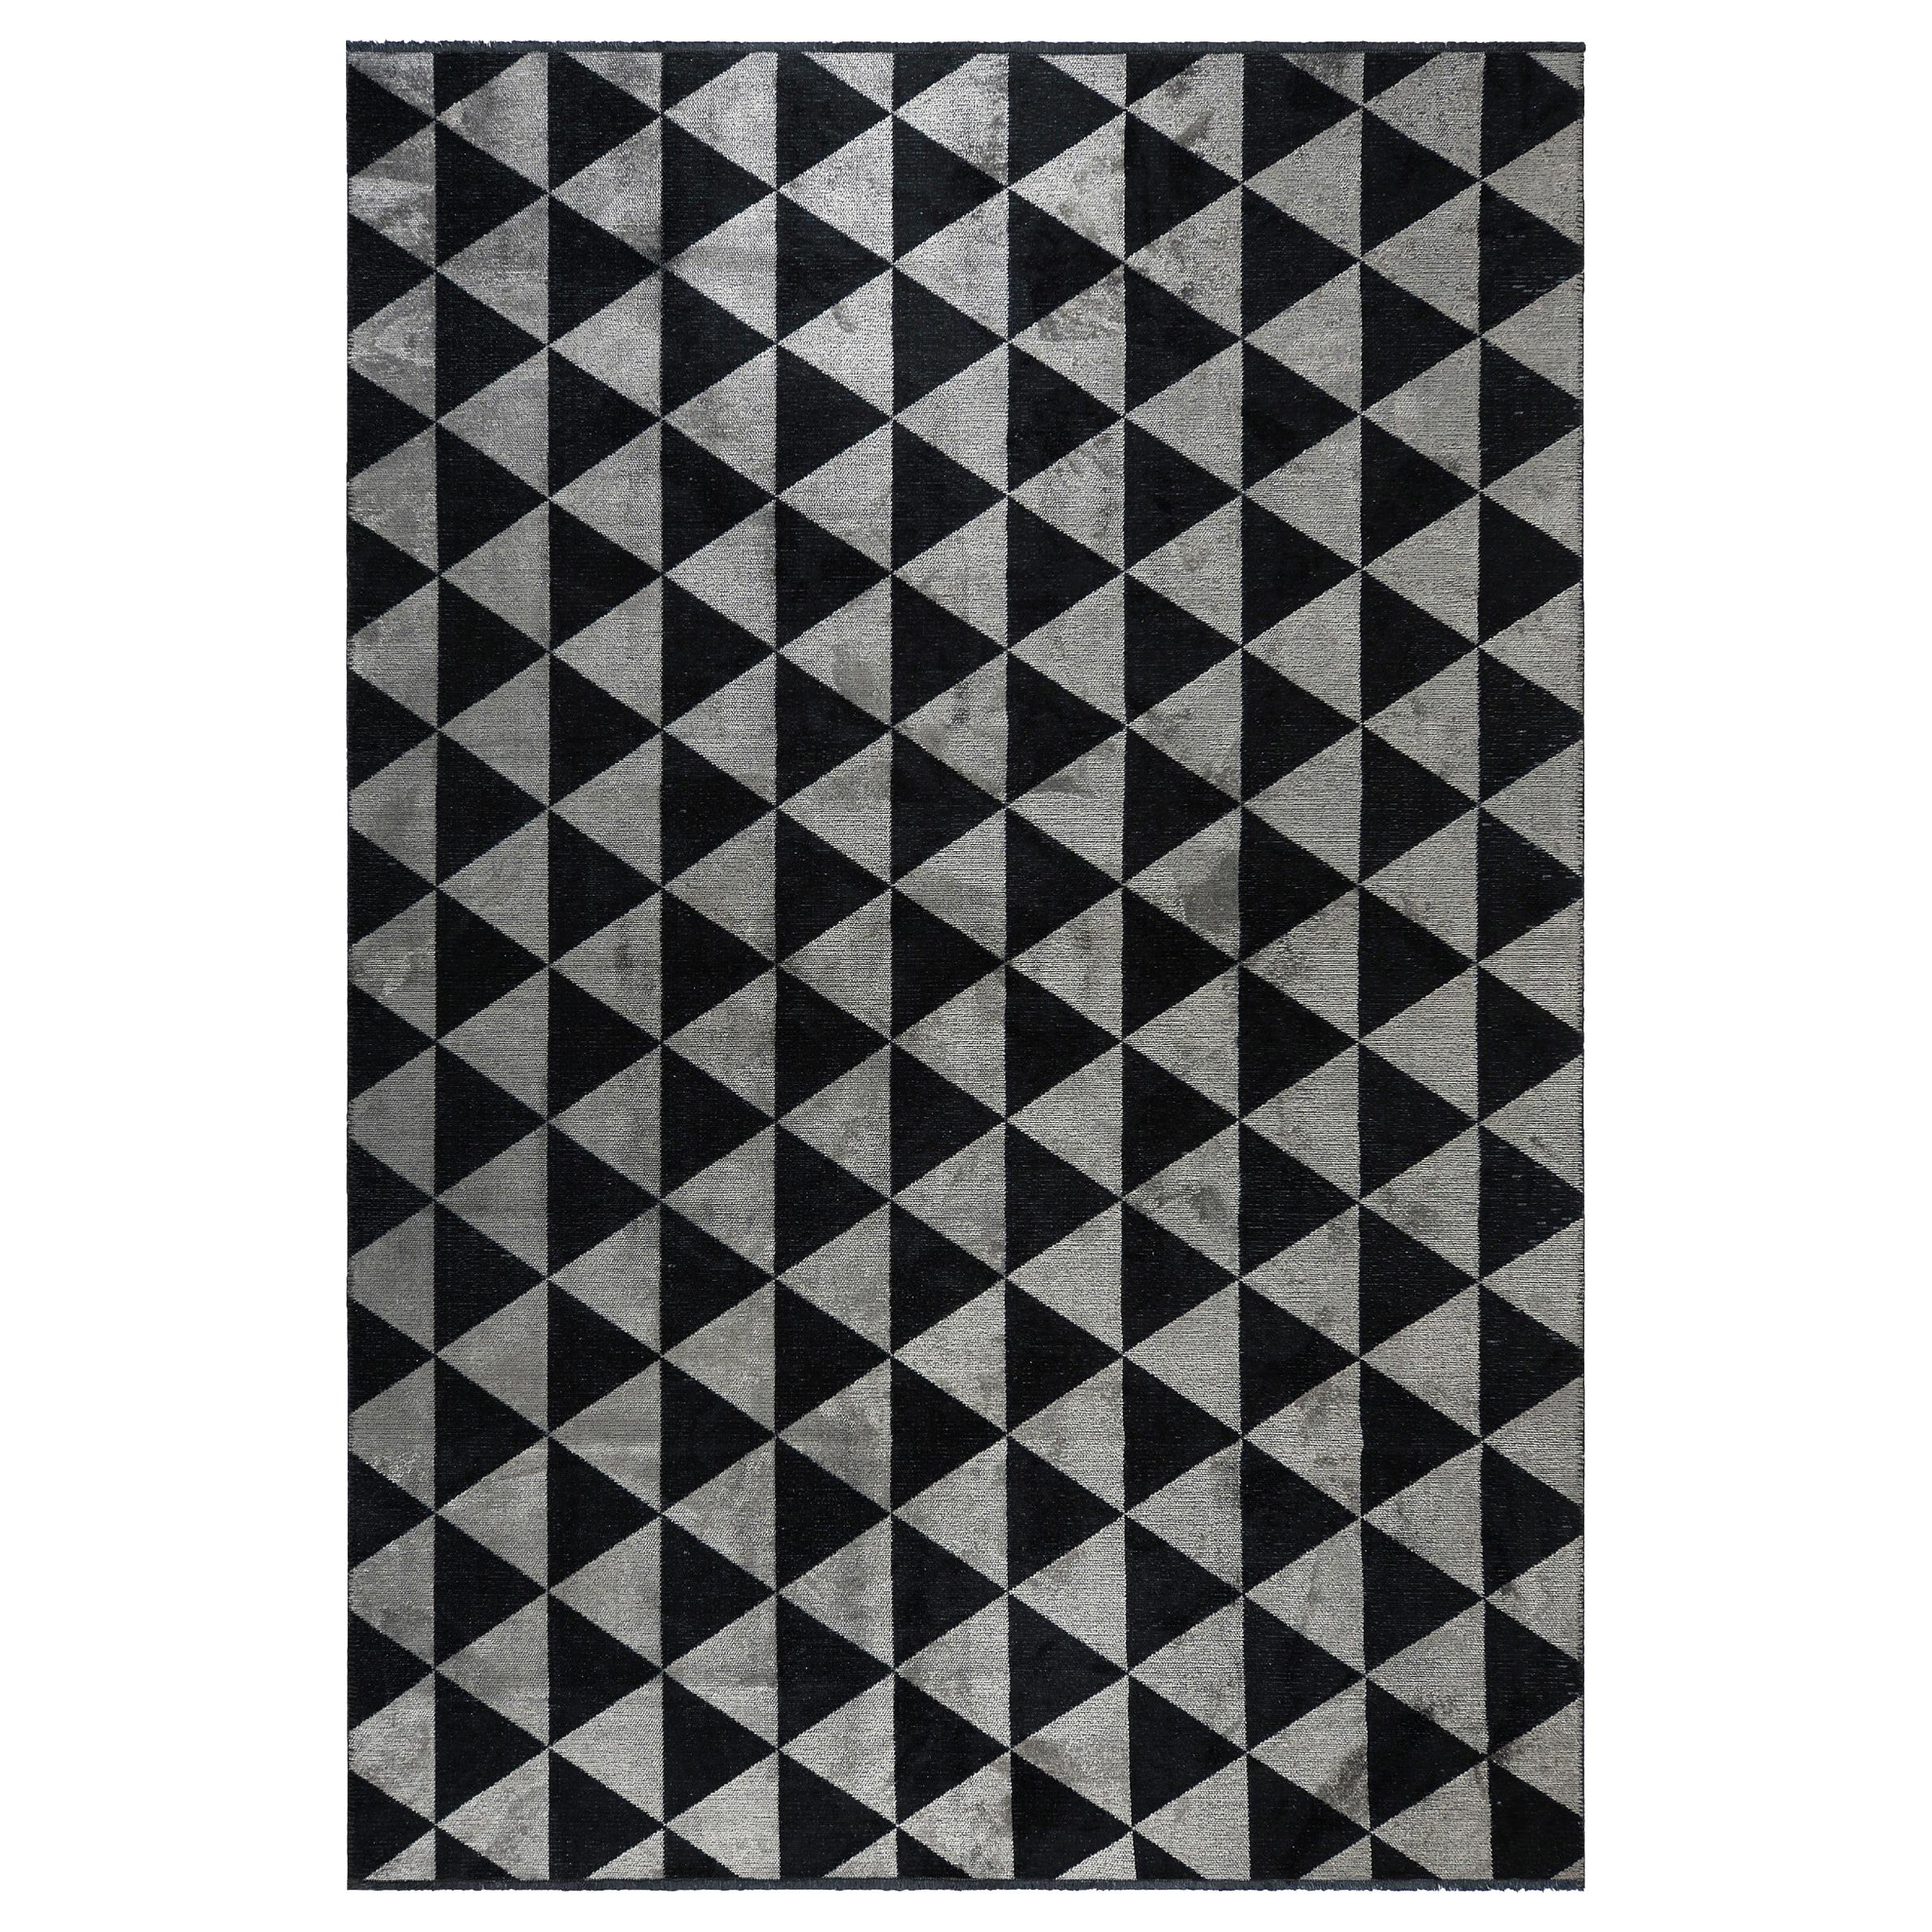 Tapis gris argenté, gris et noir à motif géométrique triangulaire en forme de diamant avec brillance